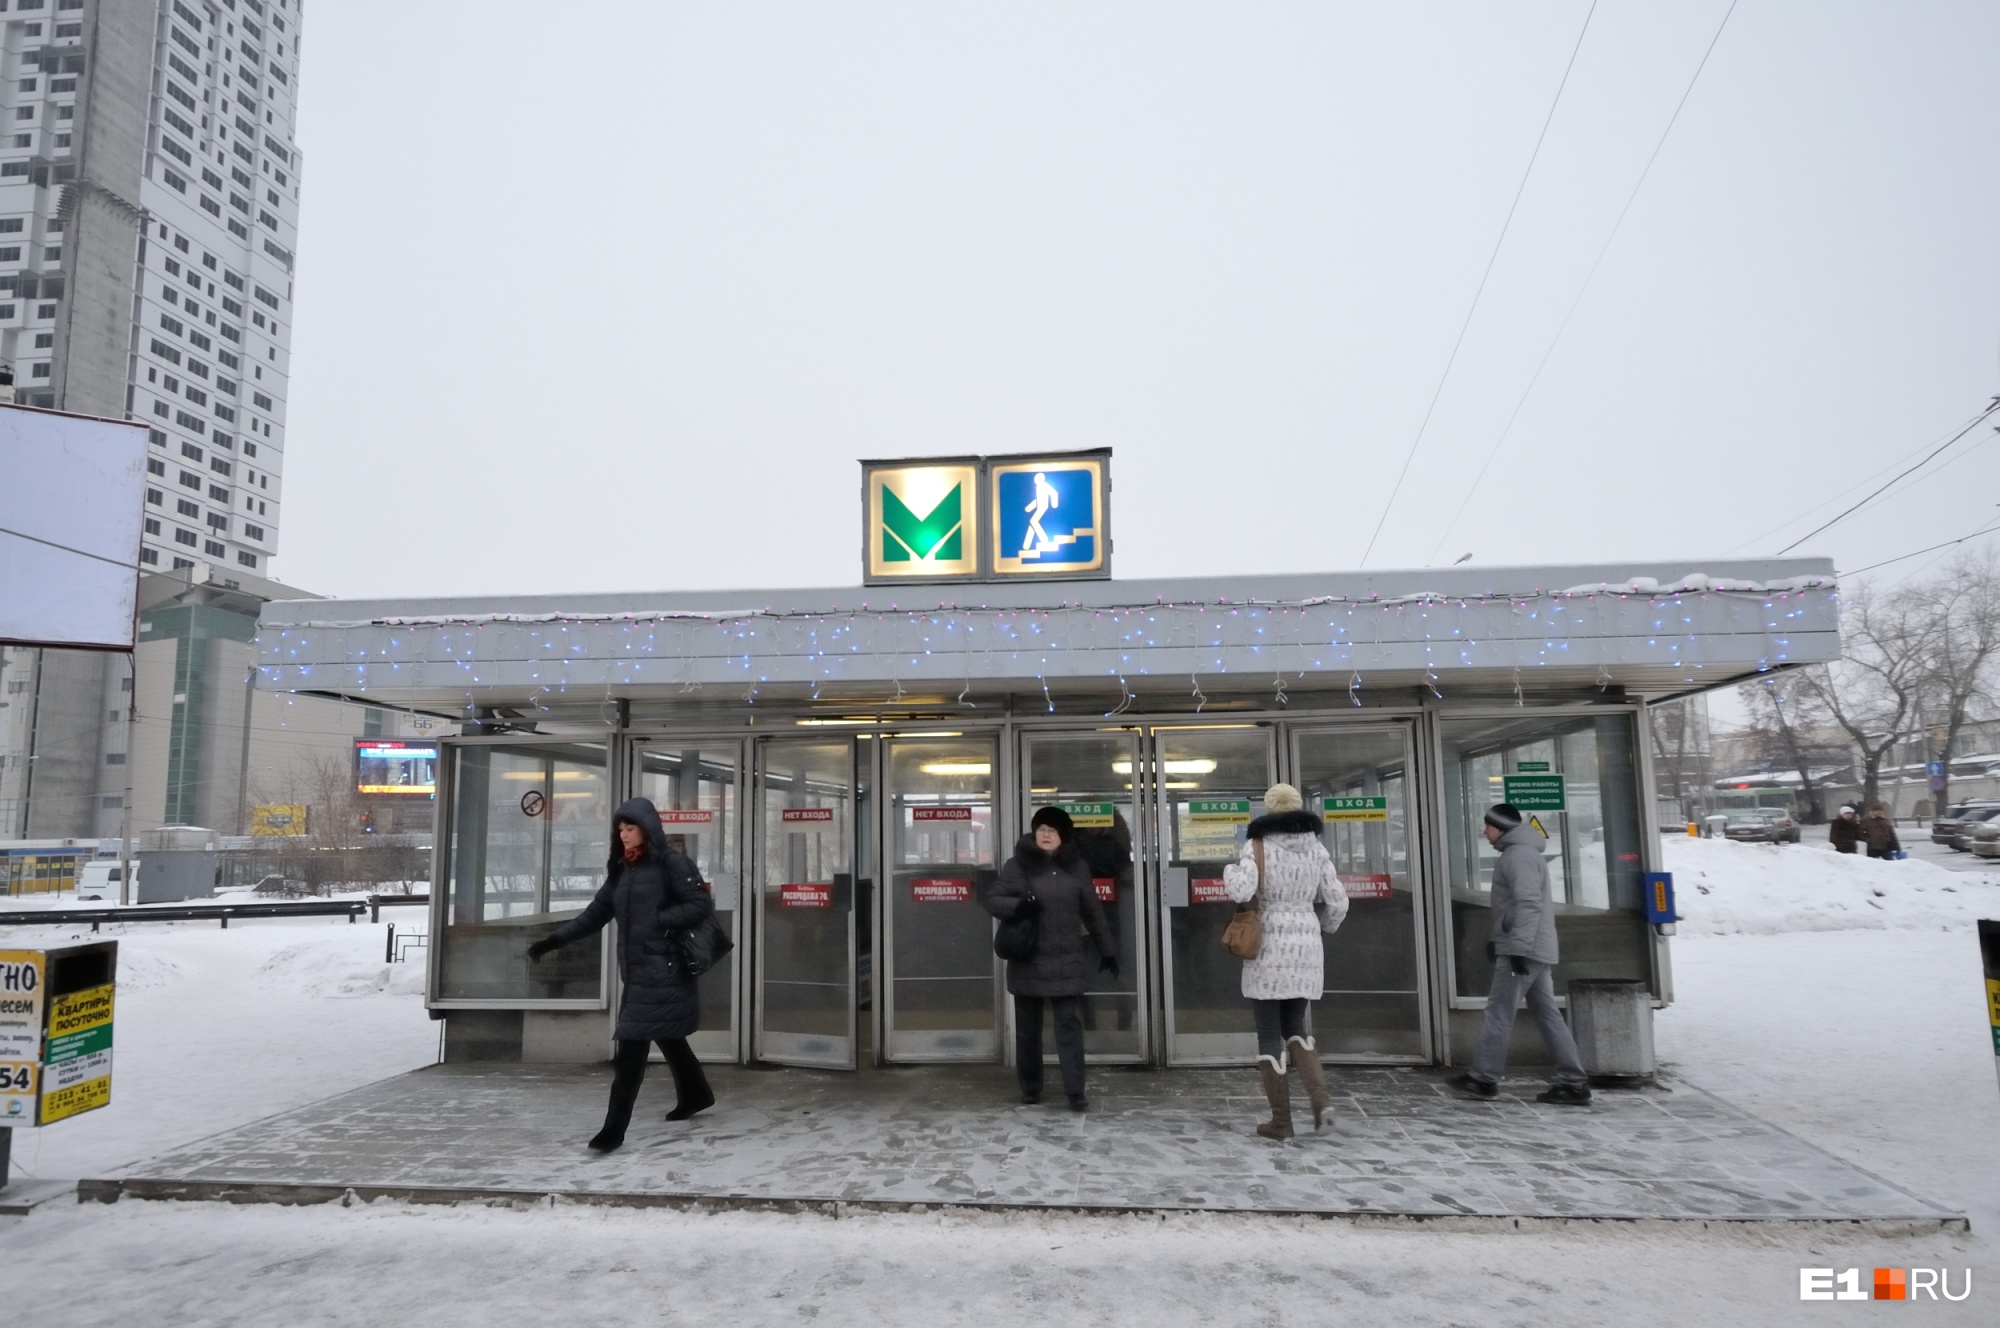 Из вагона в вагон: мэрия Екатеринбурга решила пробить тоннель между станцией метро и ж/д вокзалом